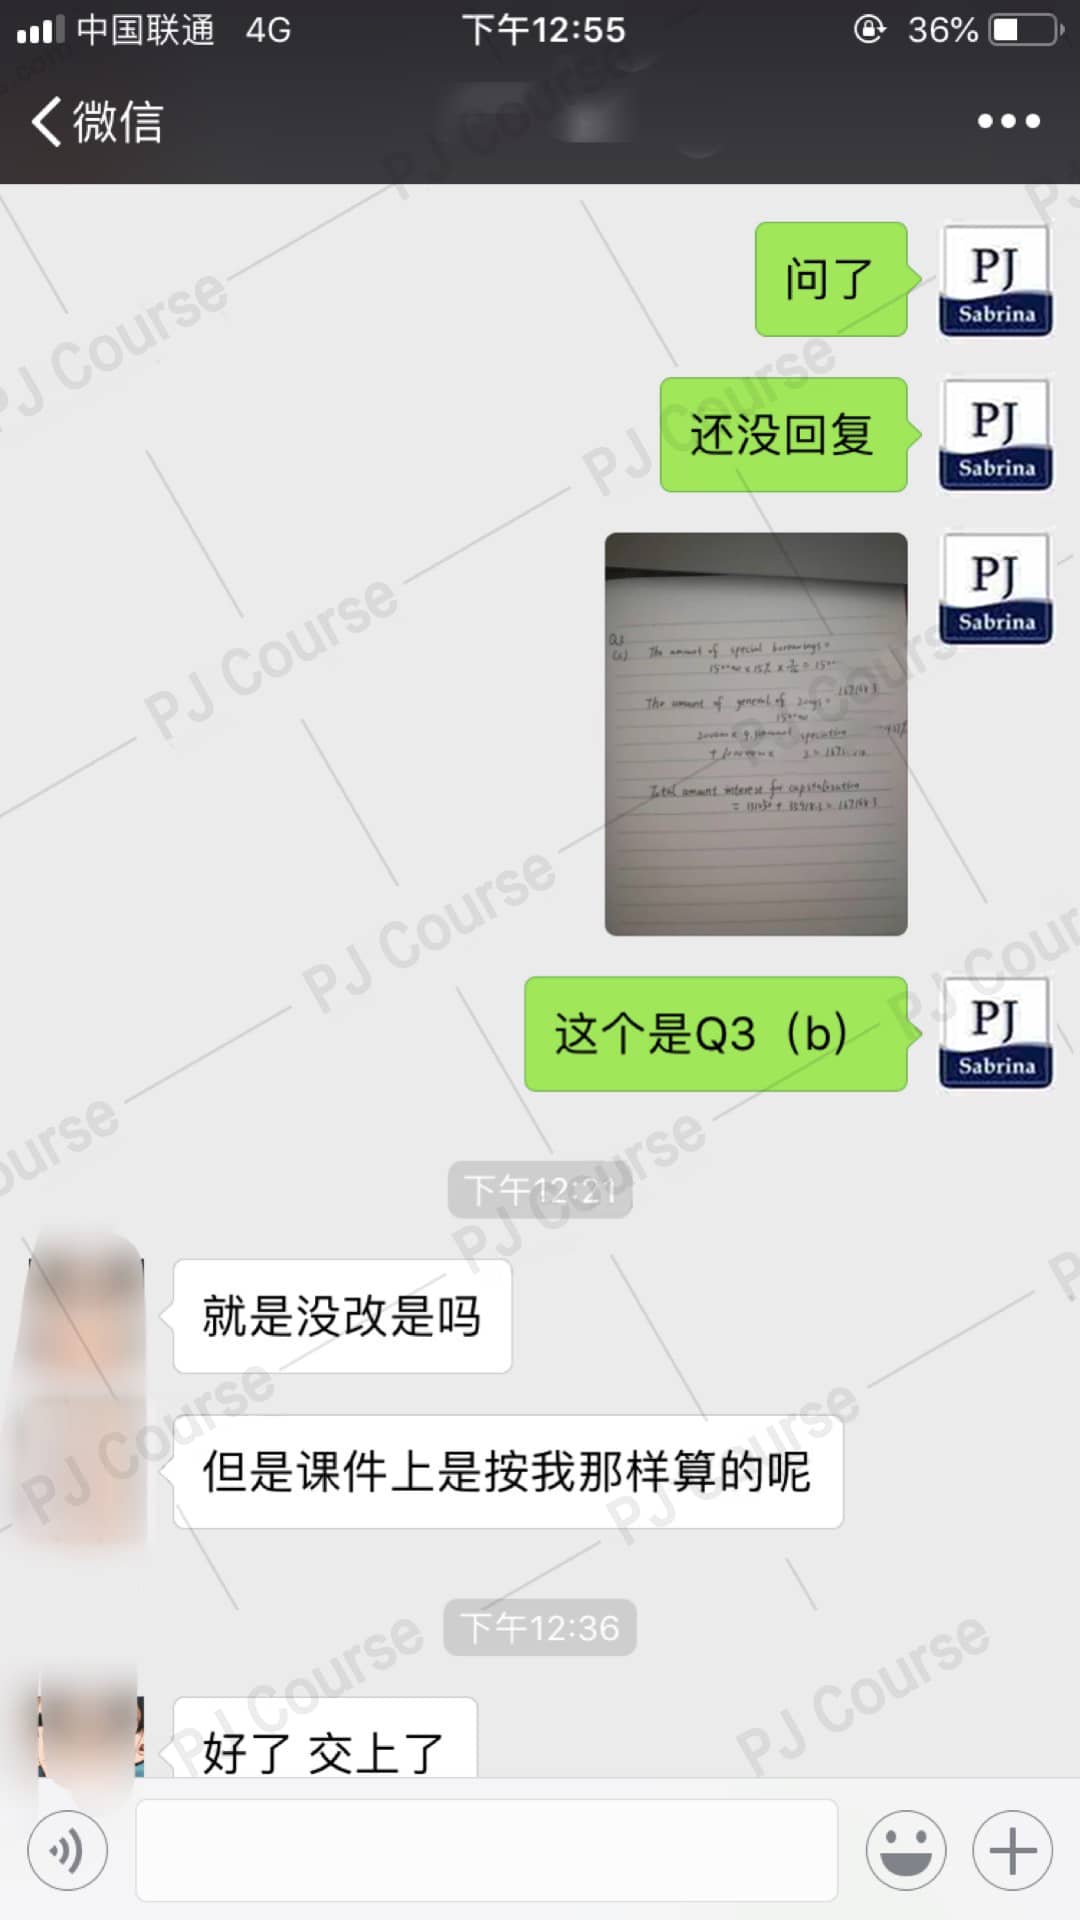 香港Company Accounting登录网站考试